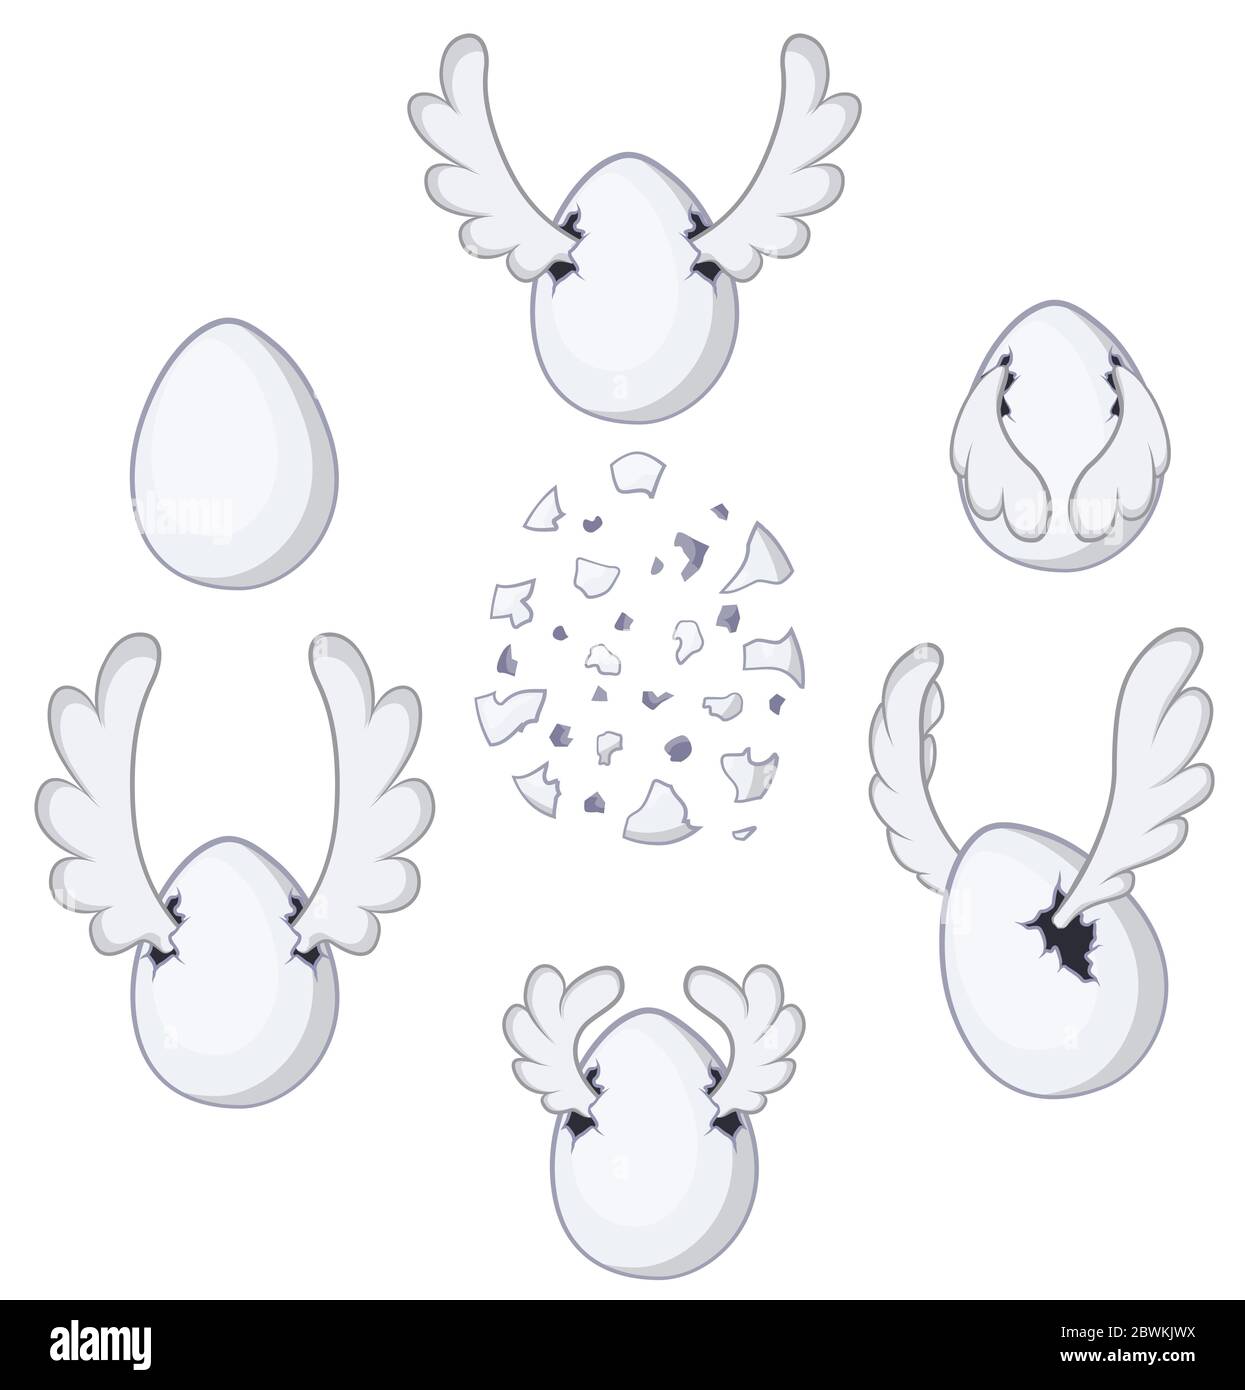 Uovo volante con ali, set di elementi di disegno cartoon, vettore isolato, orizzontale Illustrazione Vettoriale